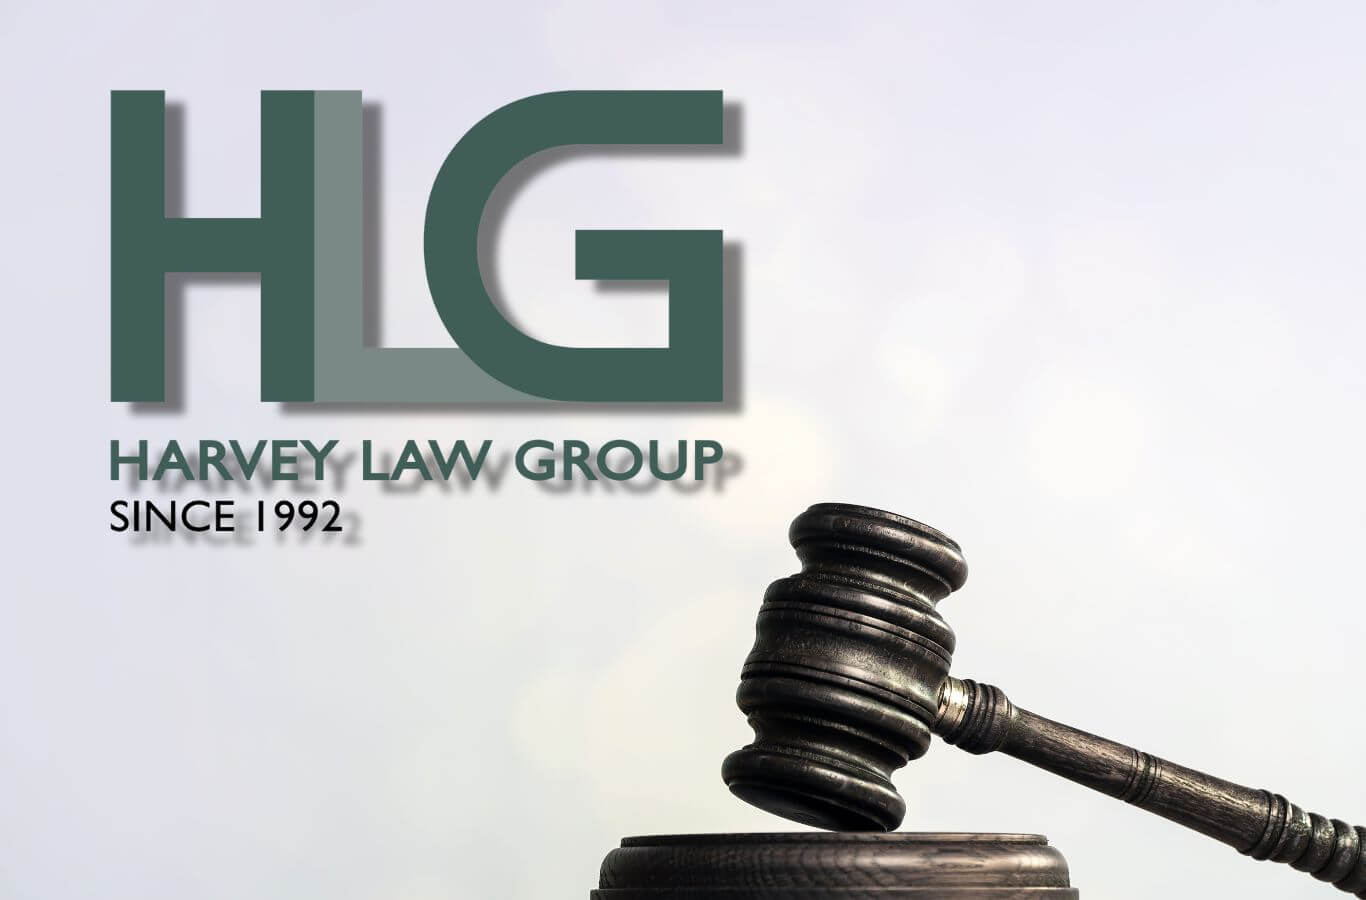 Harvey Law Group - Công ty Luật di trú hàng đầu